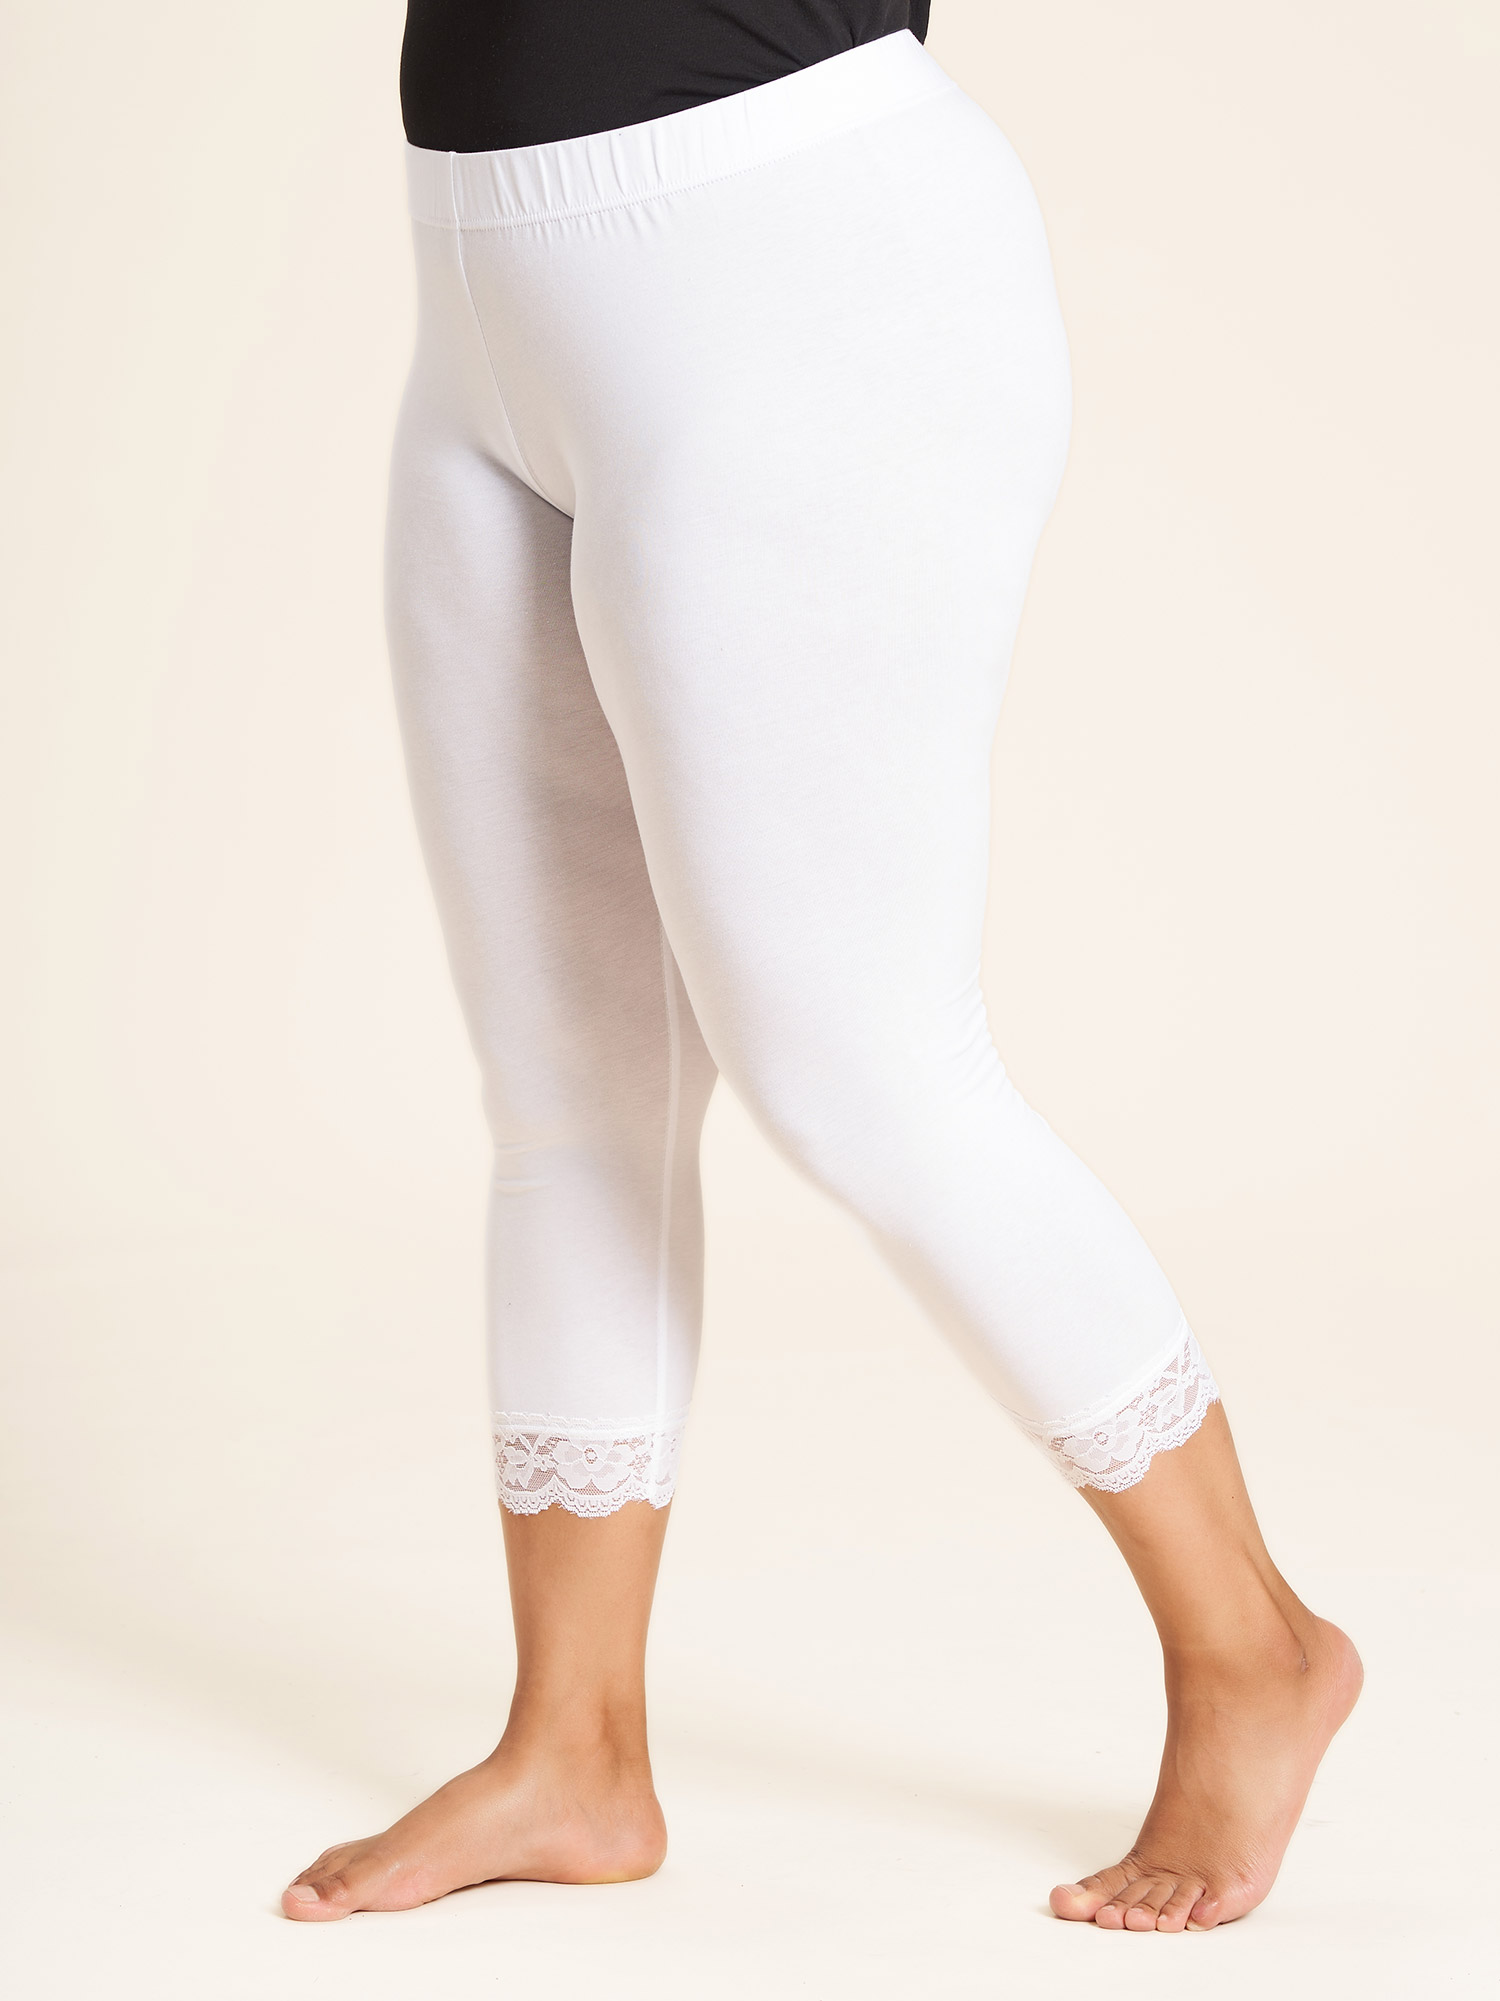 OSLO - Hvide 3/4 leggings med blondekant fra Sandgaard